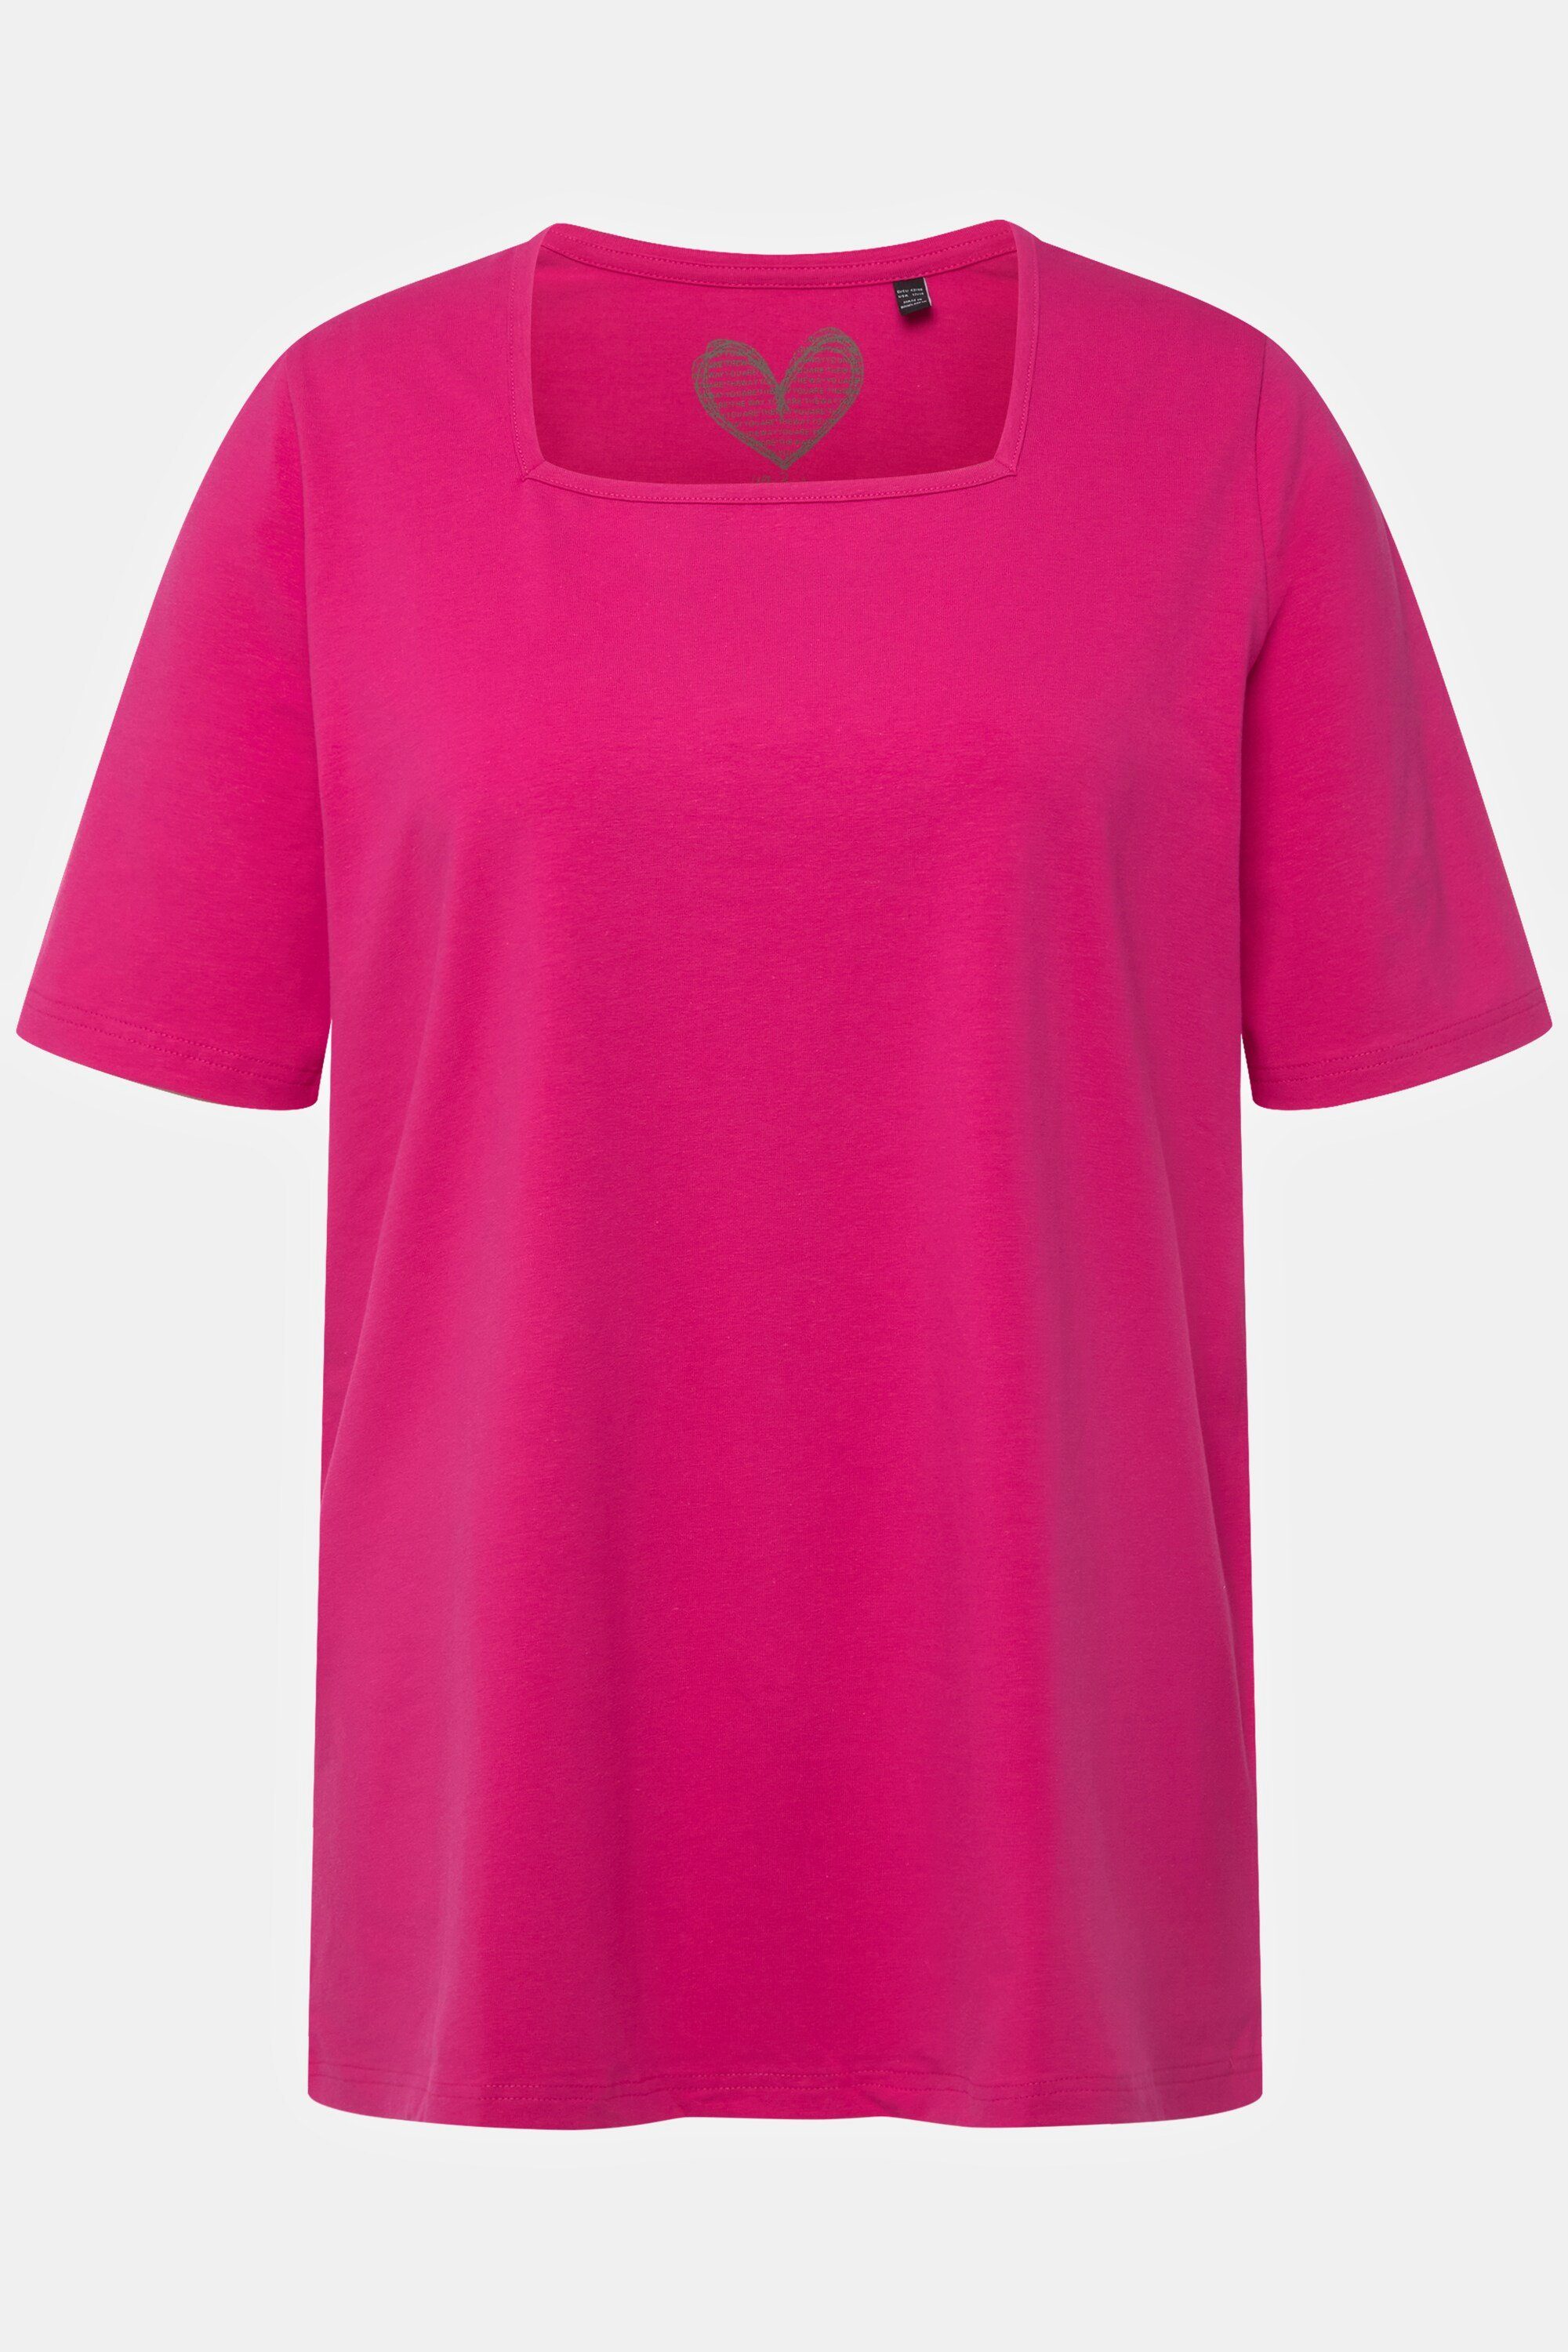 fuchsia Carree-Ausschnitt Popken Rundhalsshirt A-Linie T-Shirt pink Ulla Halbarm